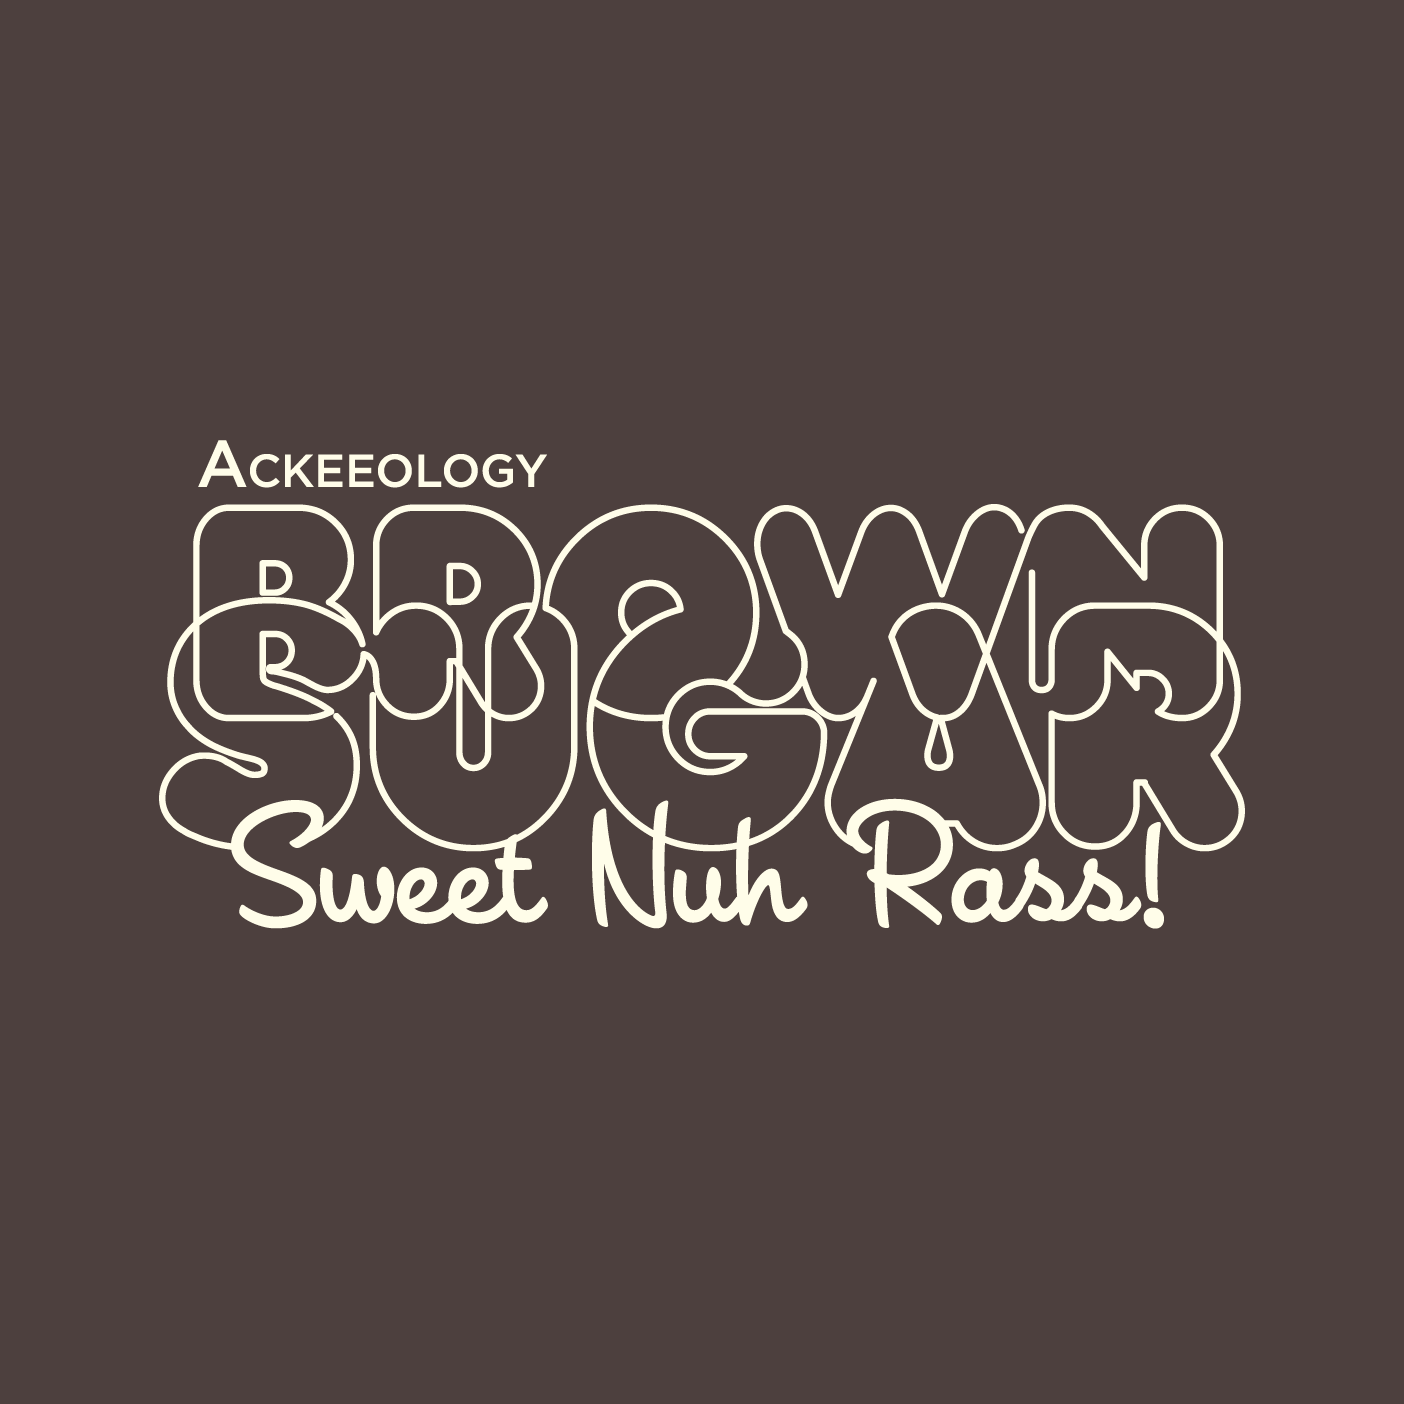 Brown Sugar: Ackeeology